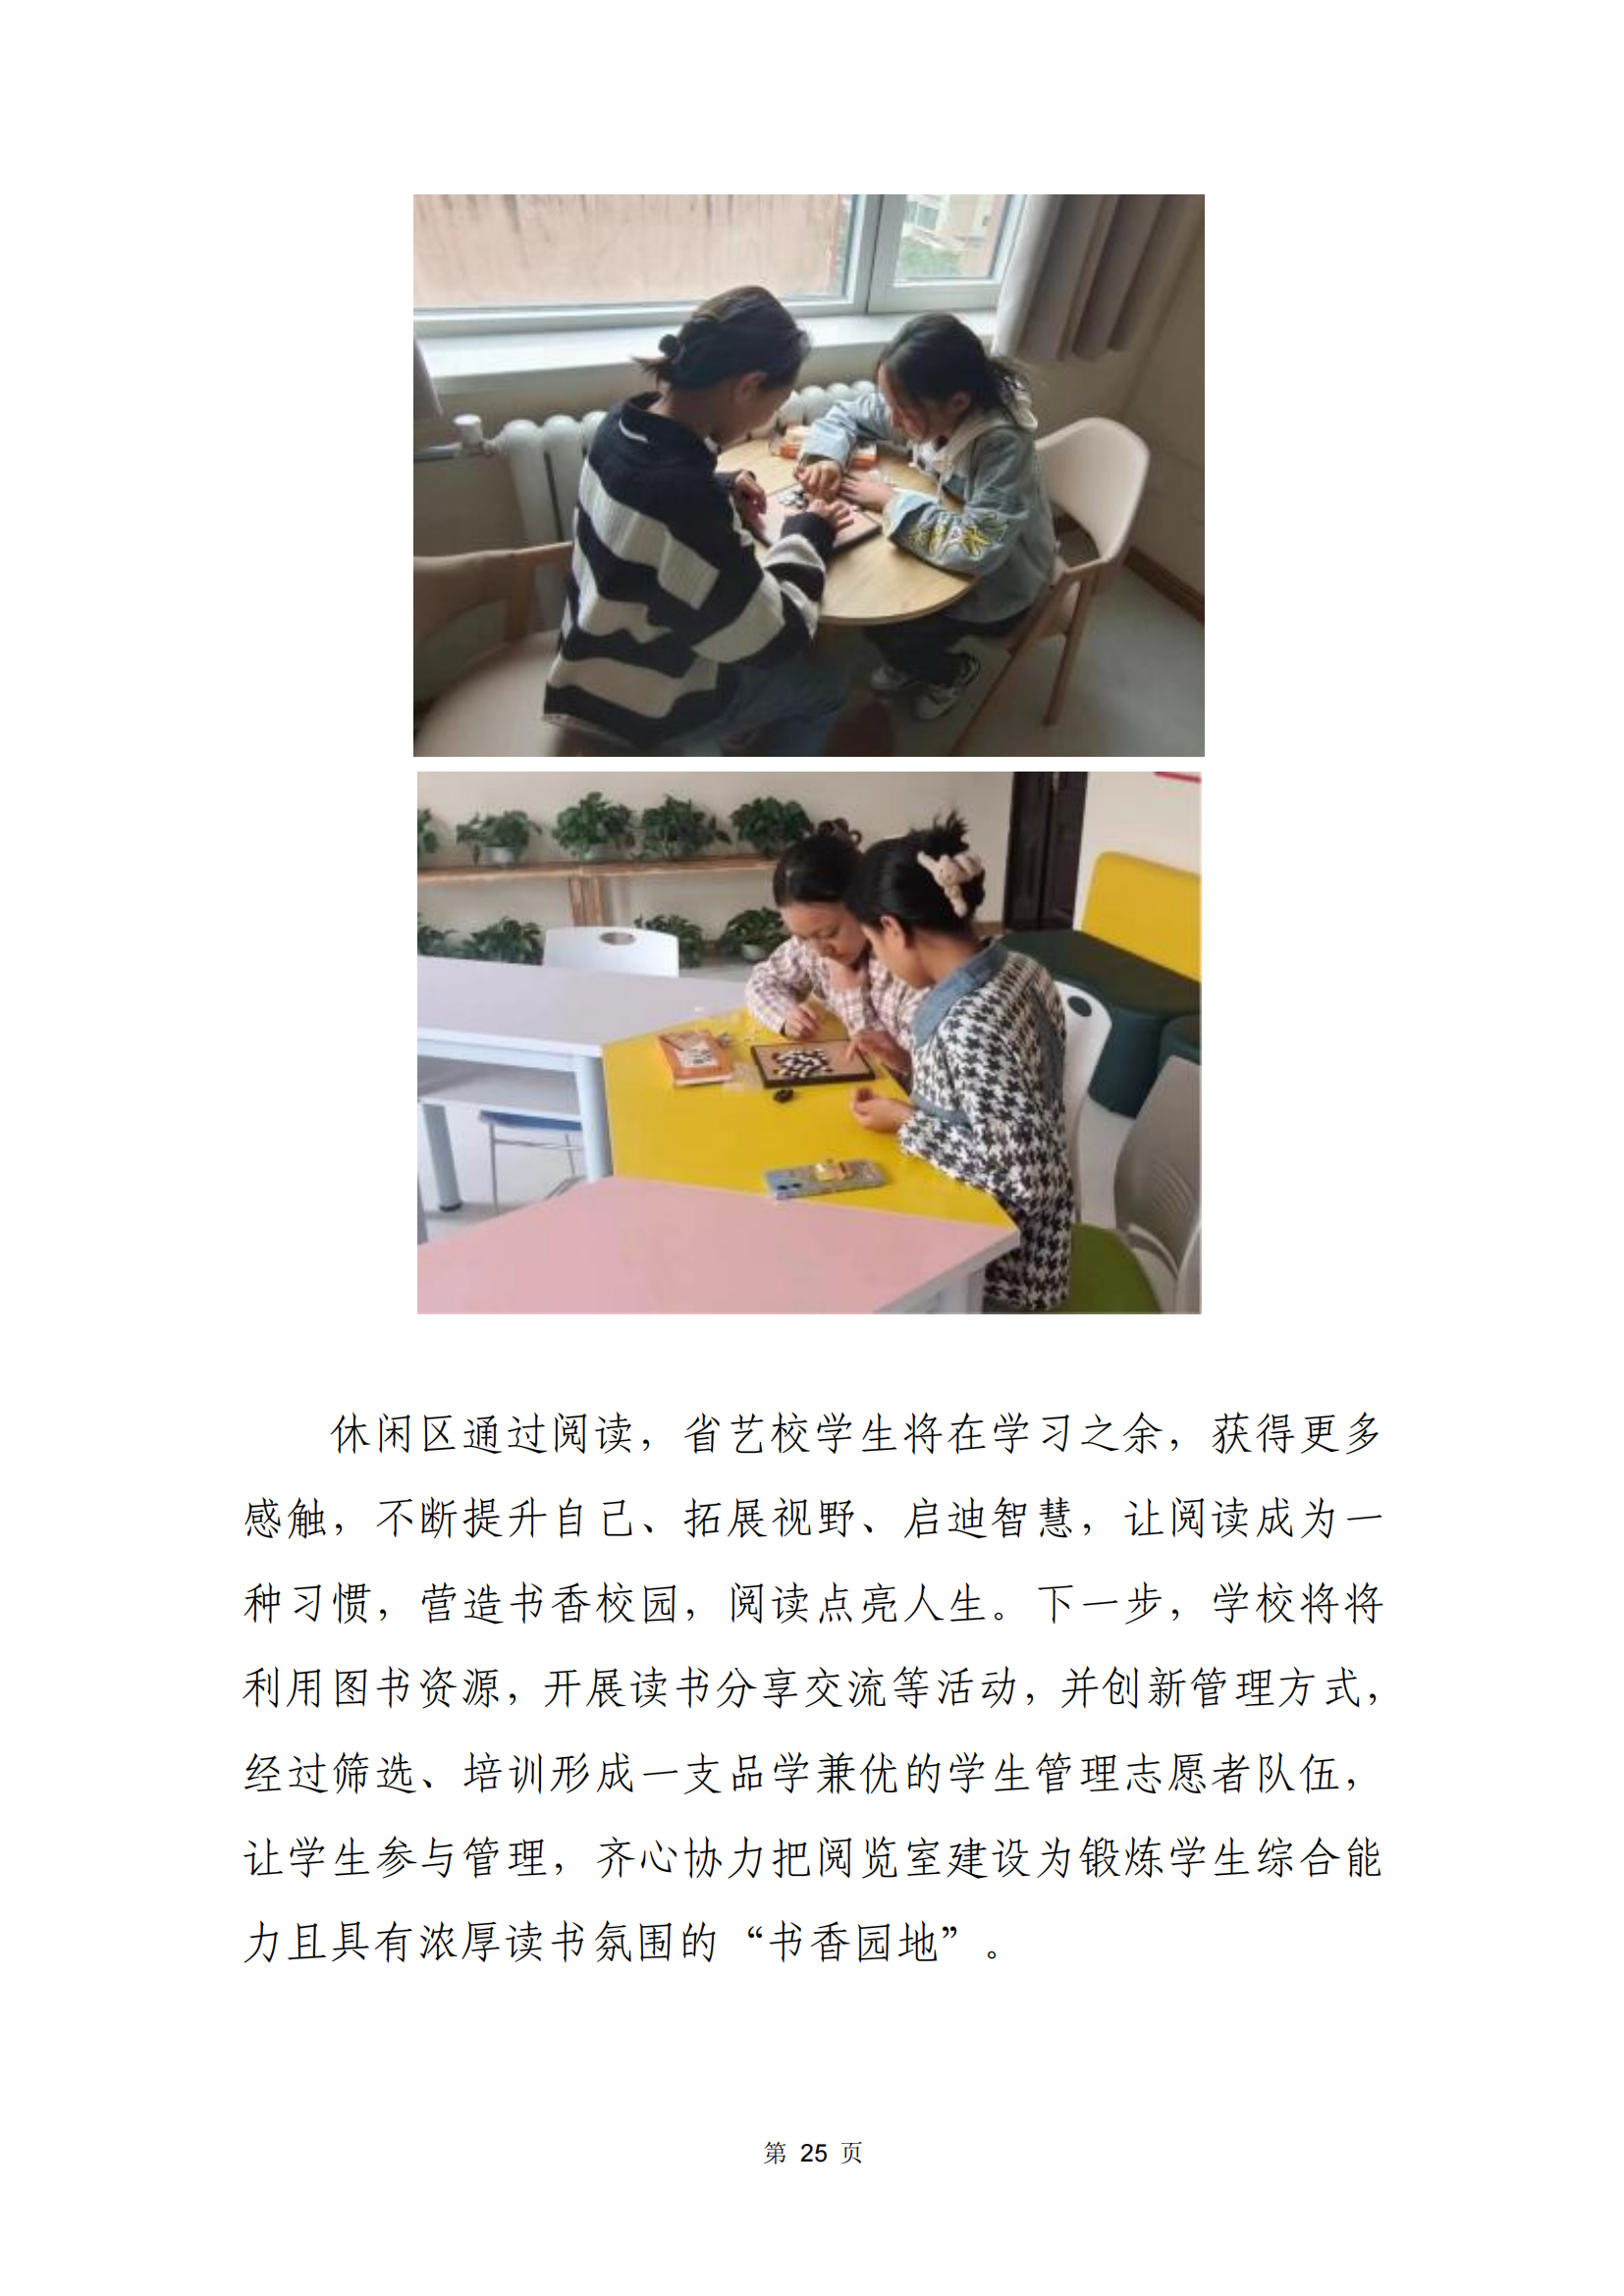 青海省文化艺术职业学校教育质量年报_32.png